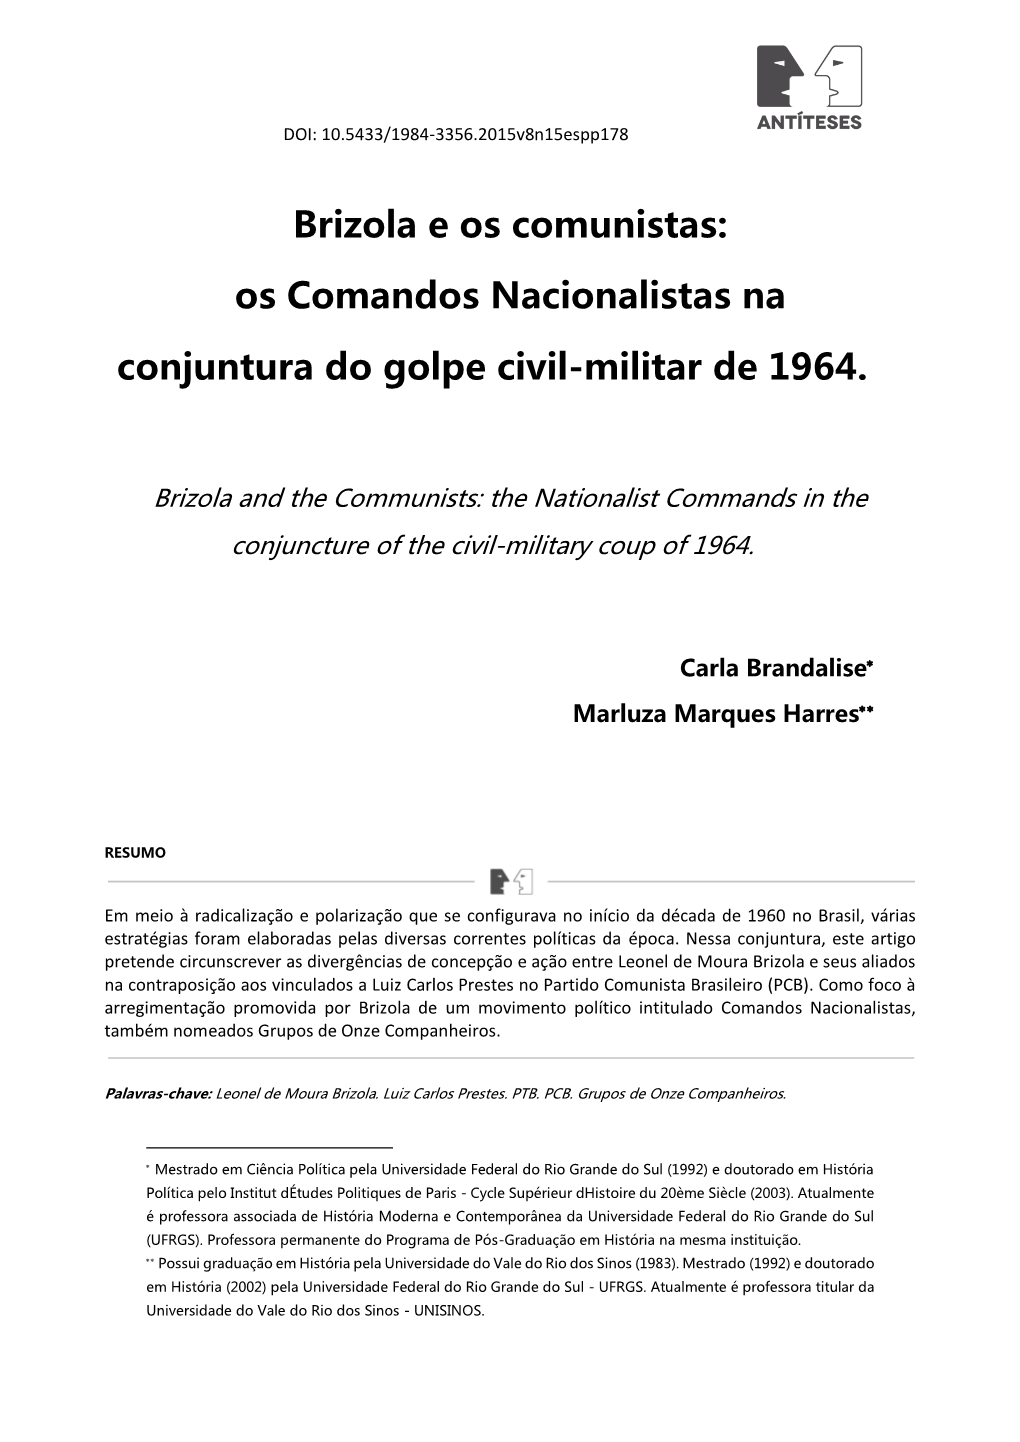 Brizola E Os Comunistas: Os Comandos Nacionalistas Na Conjuntura Do Golpe Civil-Militar De 1964